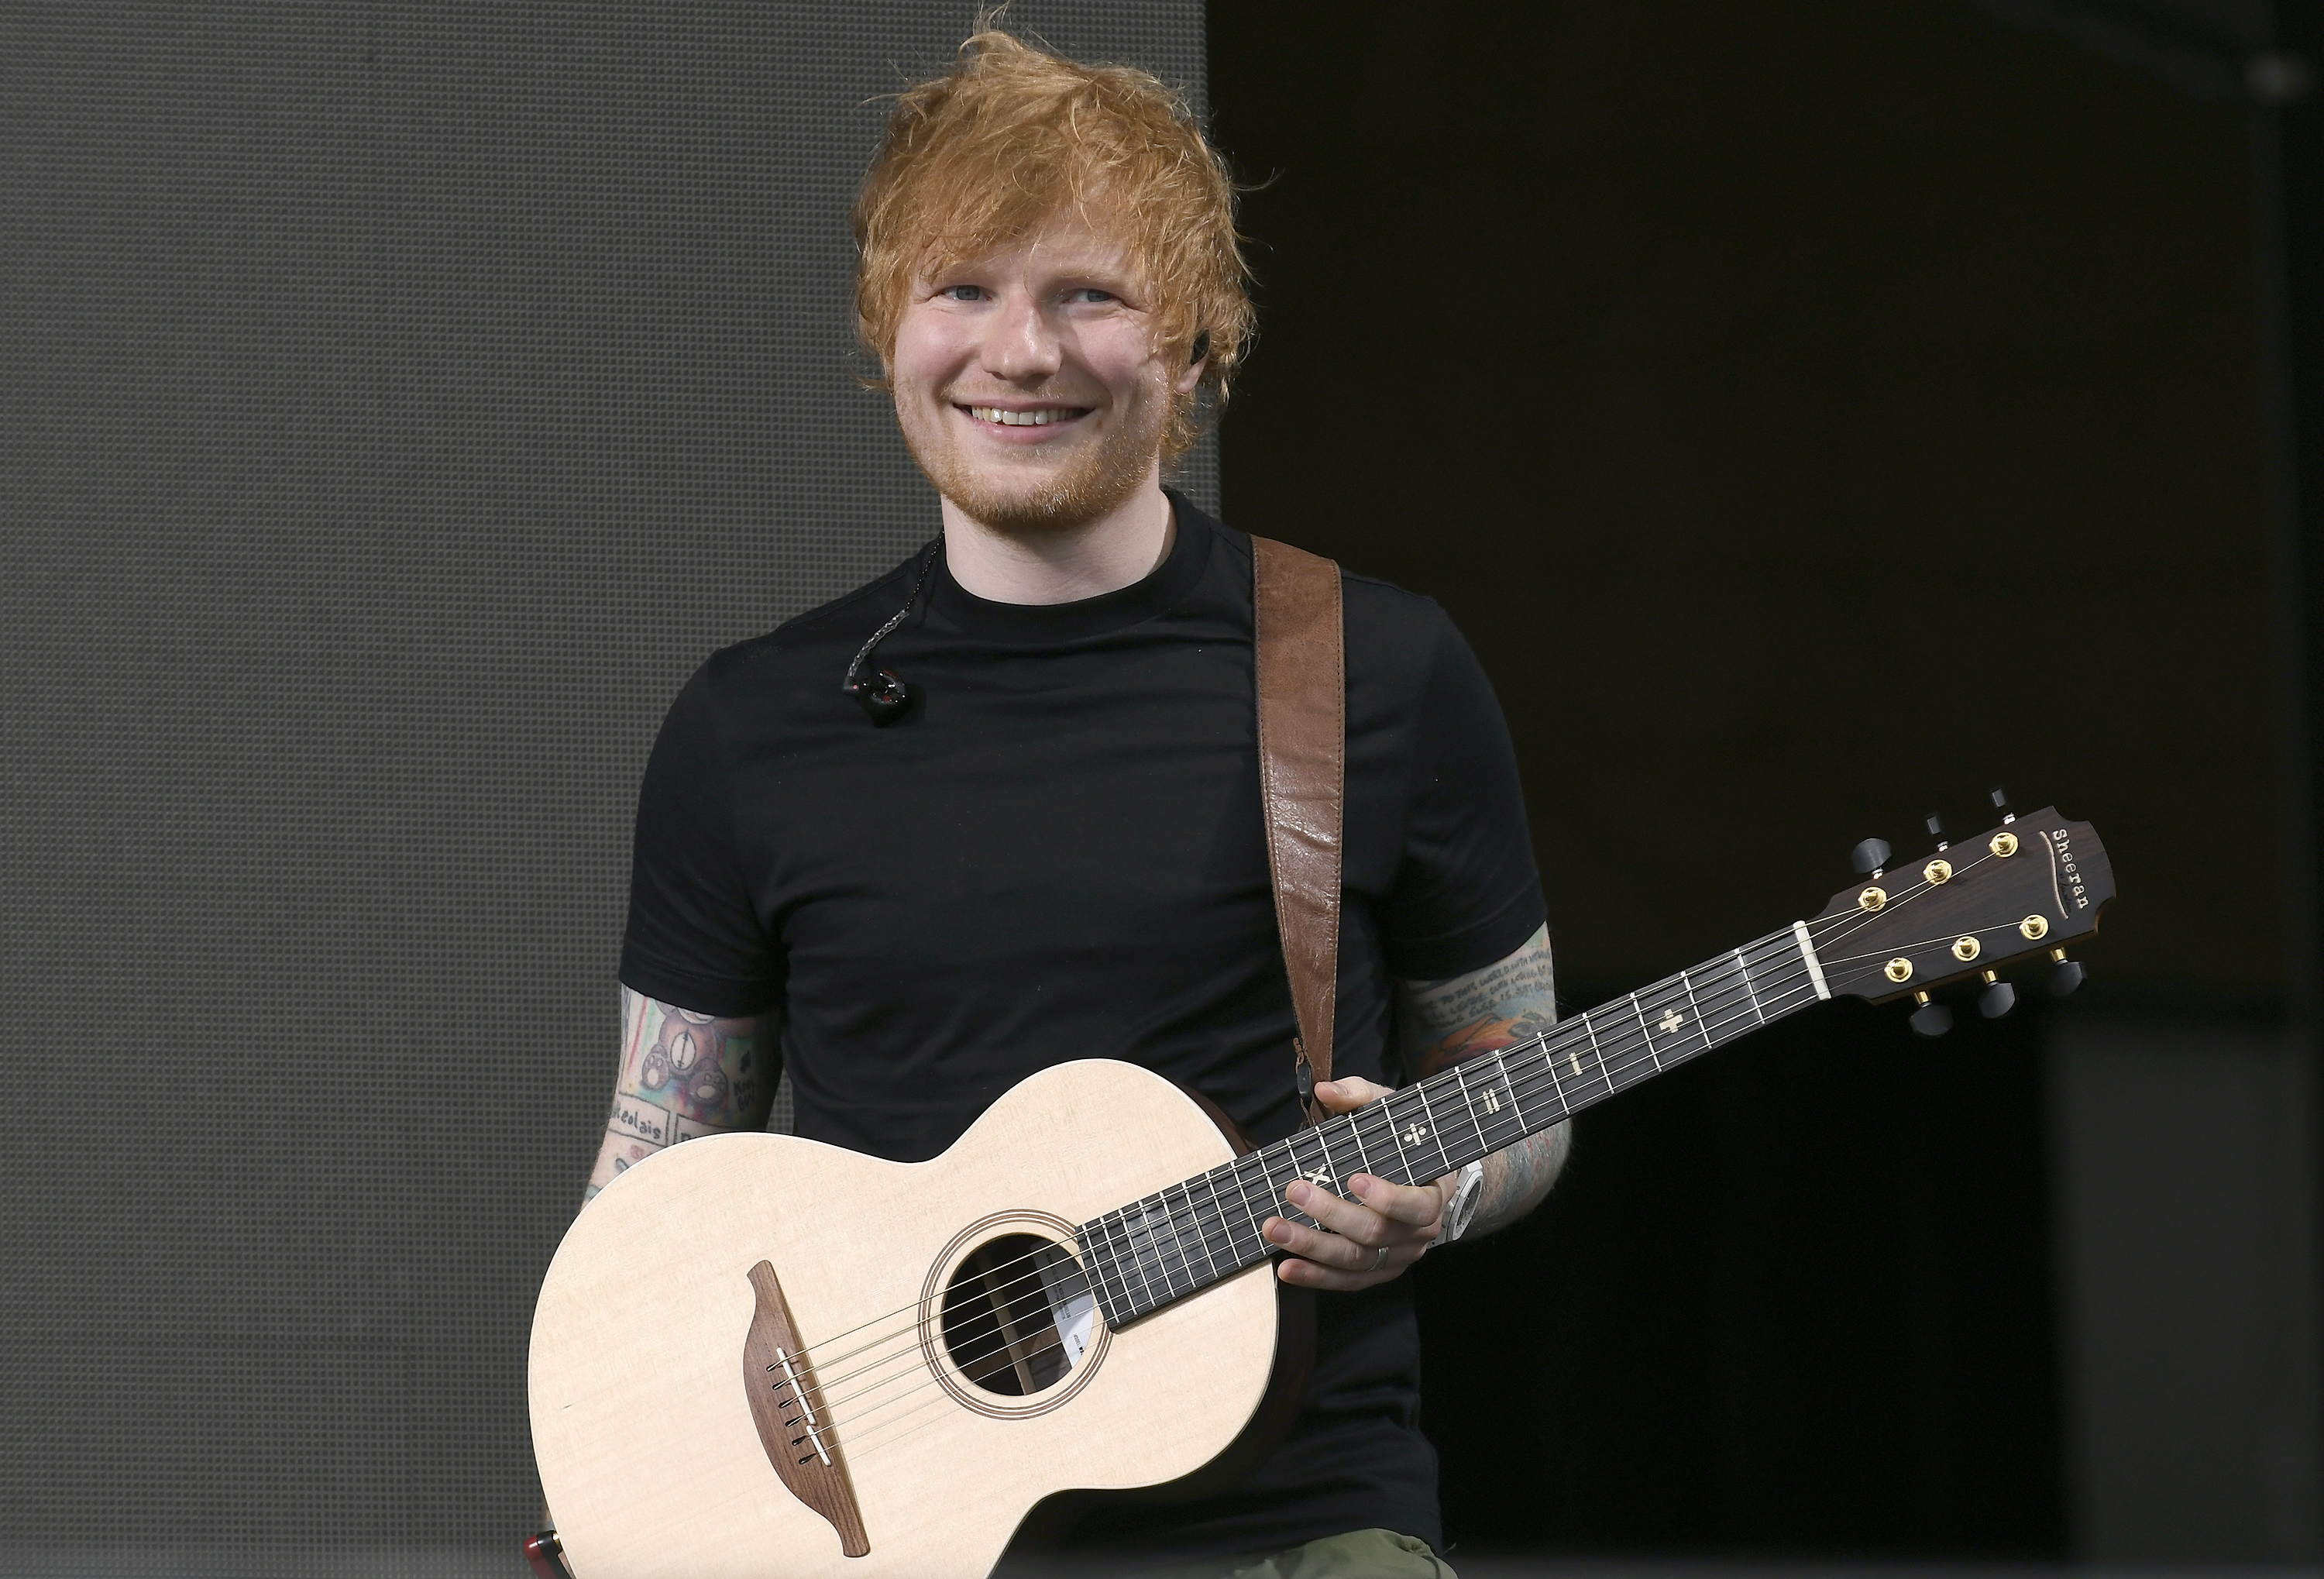 Habrá que esperar para 'Reputation (Taylor's Version)': Ed Sheeran confirma  que aún no ha regrabado 'End Game' junto a Taylor Swift, LOS40